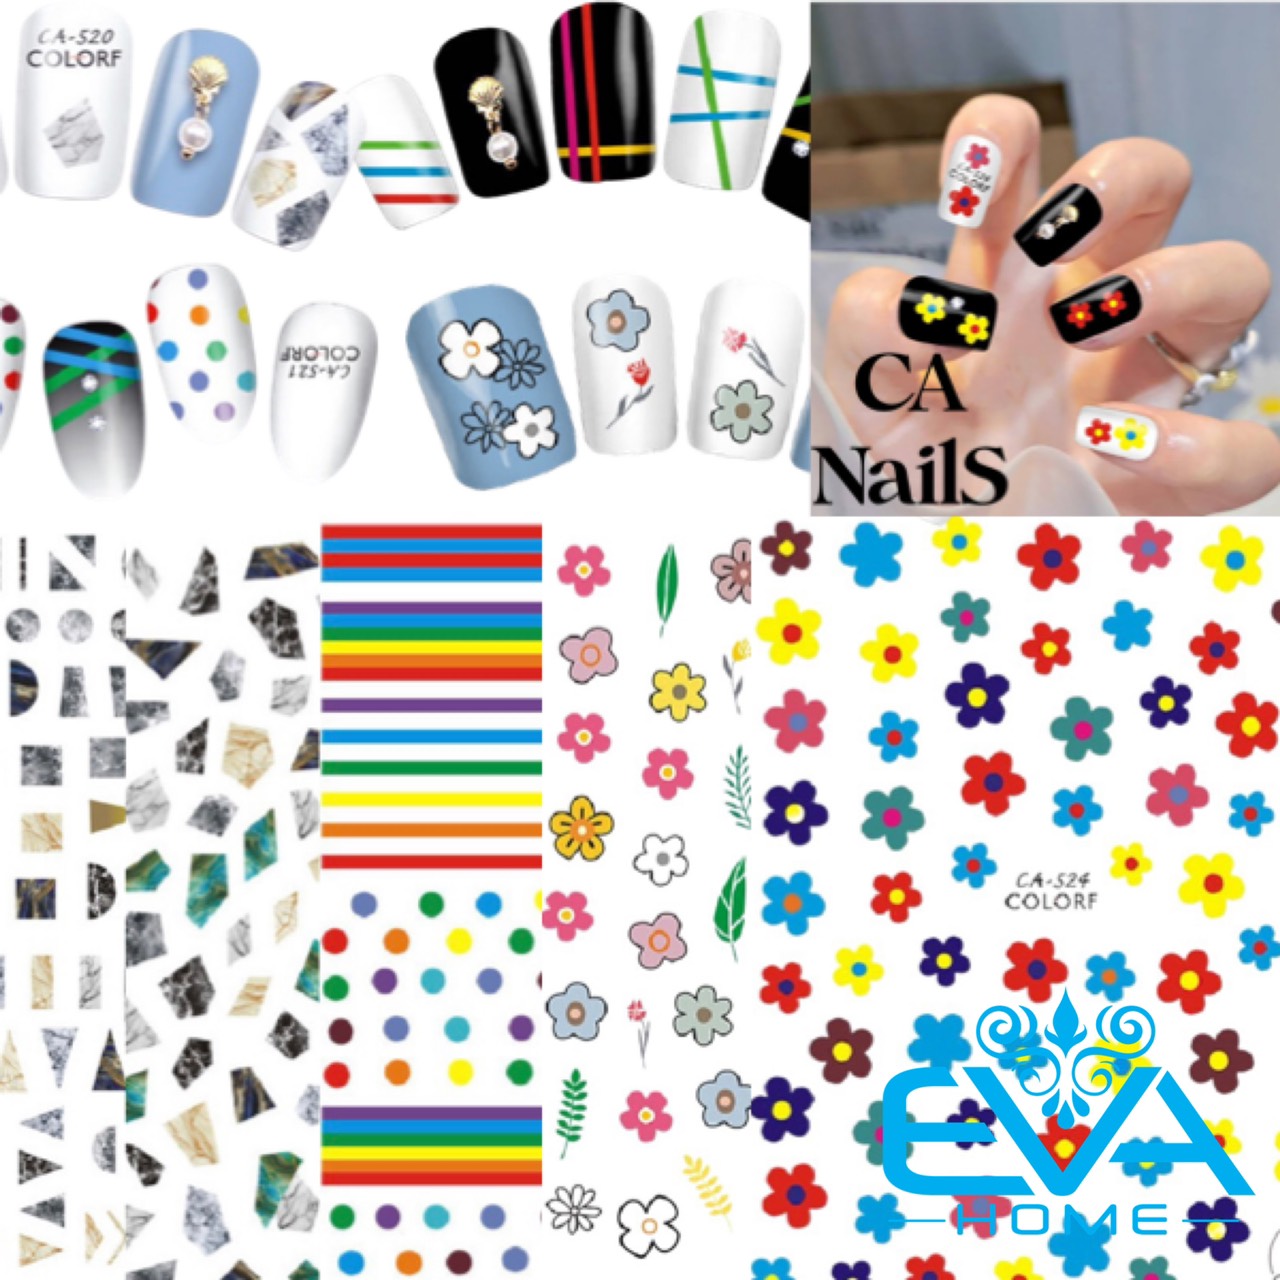 Cách dùng dán móng nail sticker siêu đẹp bền chắc  nail stickers art   YouTube